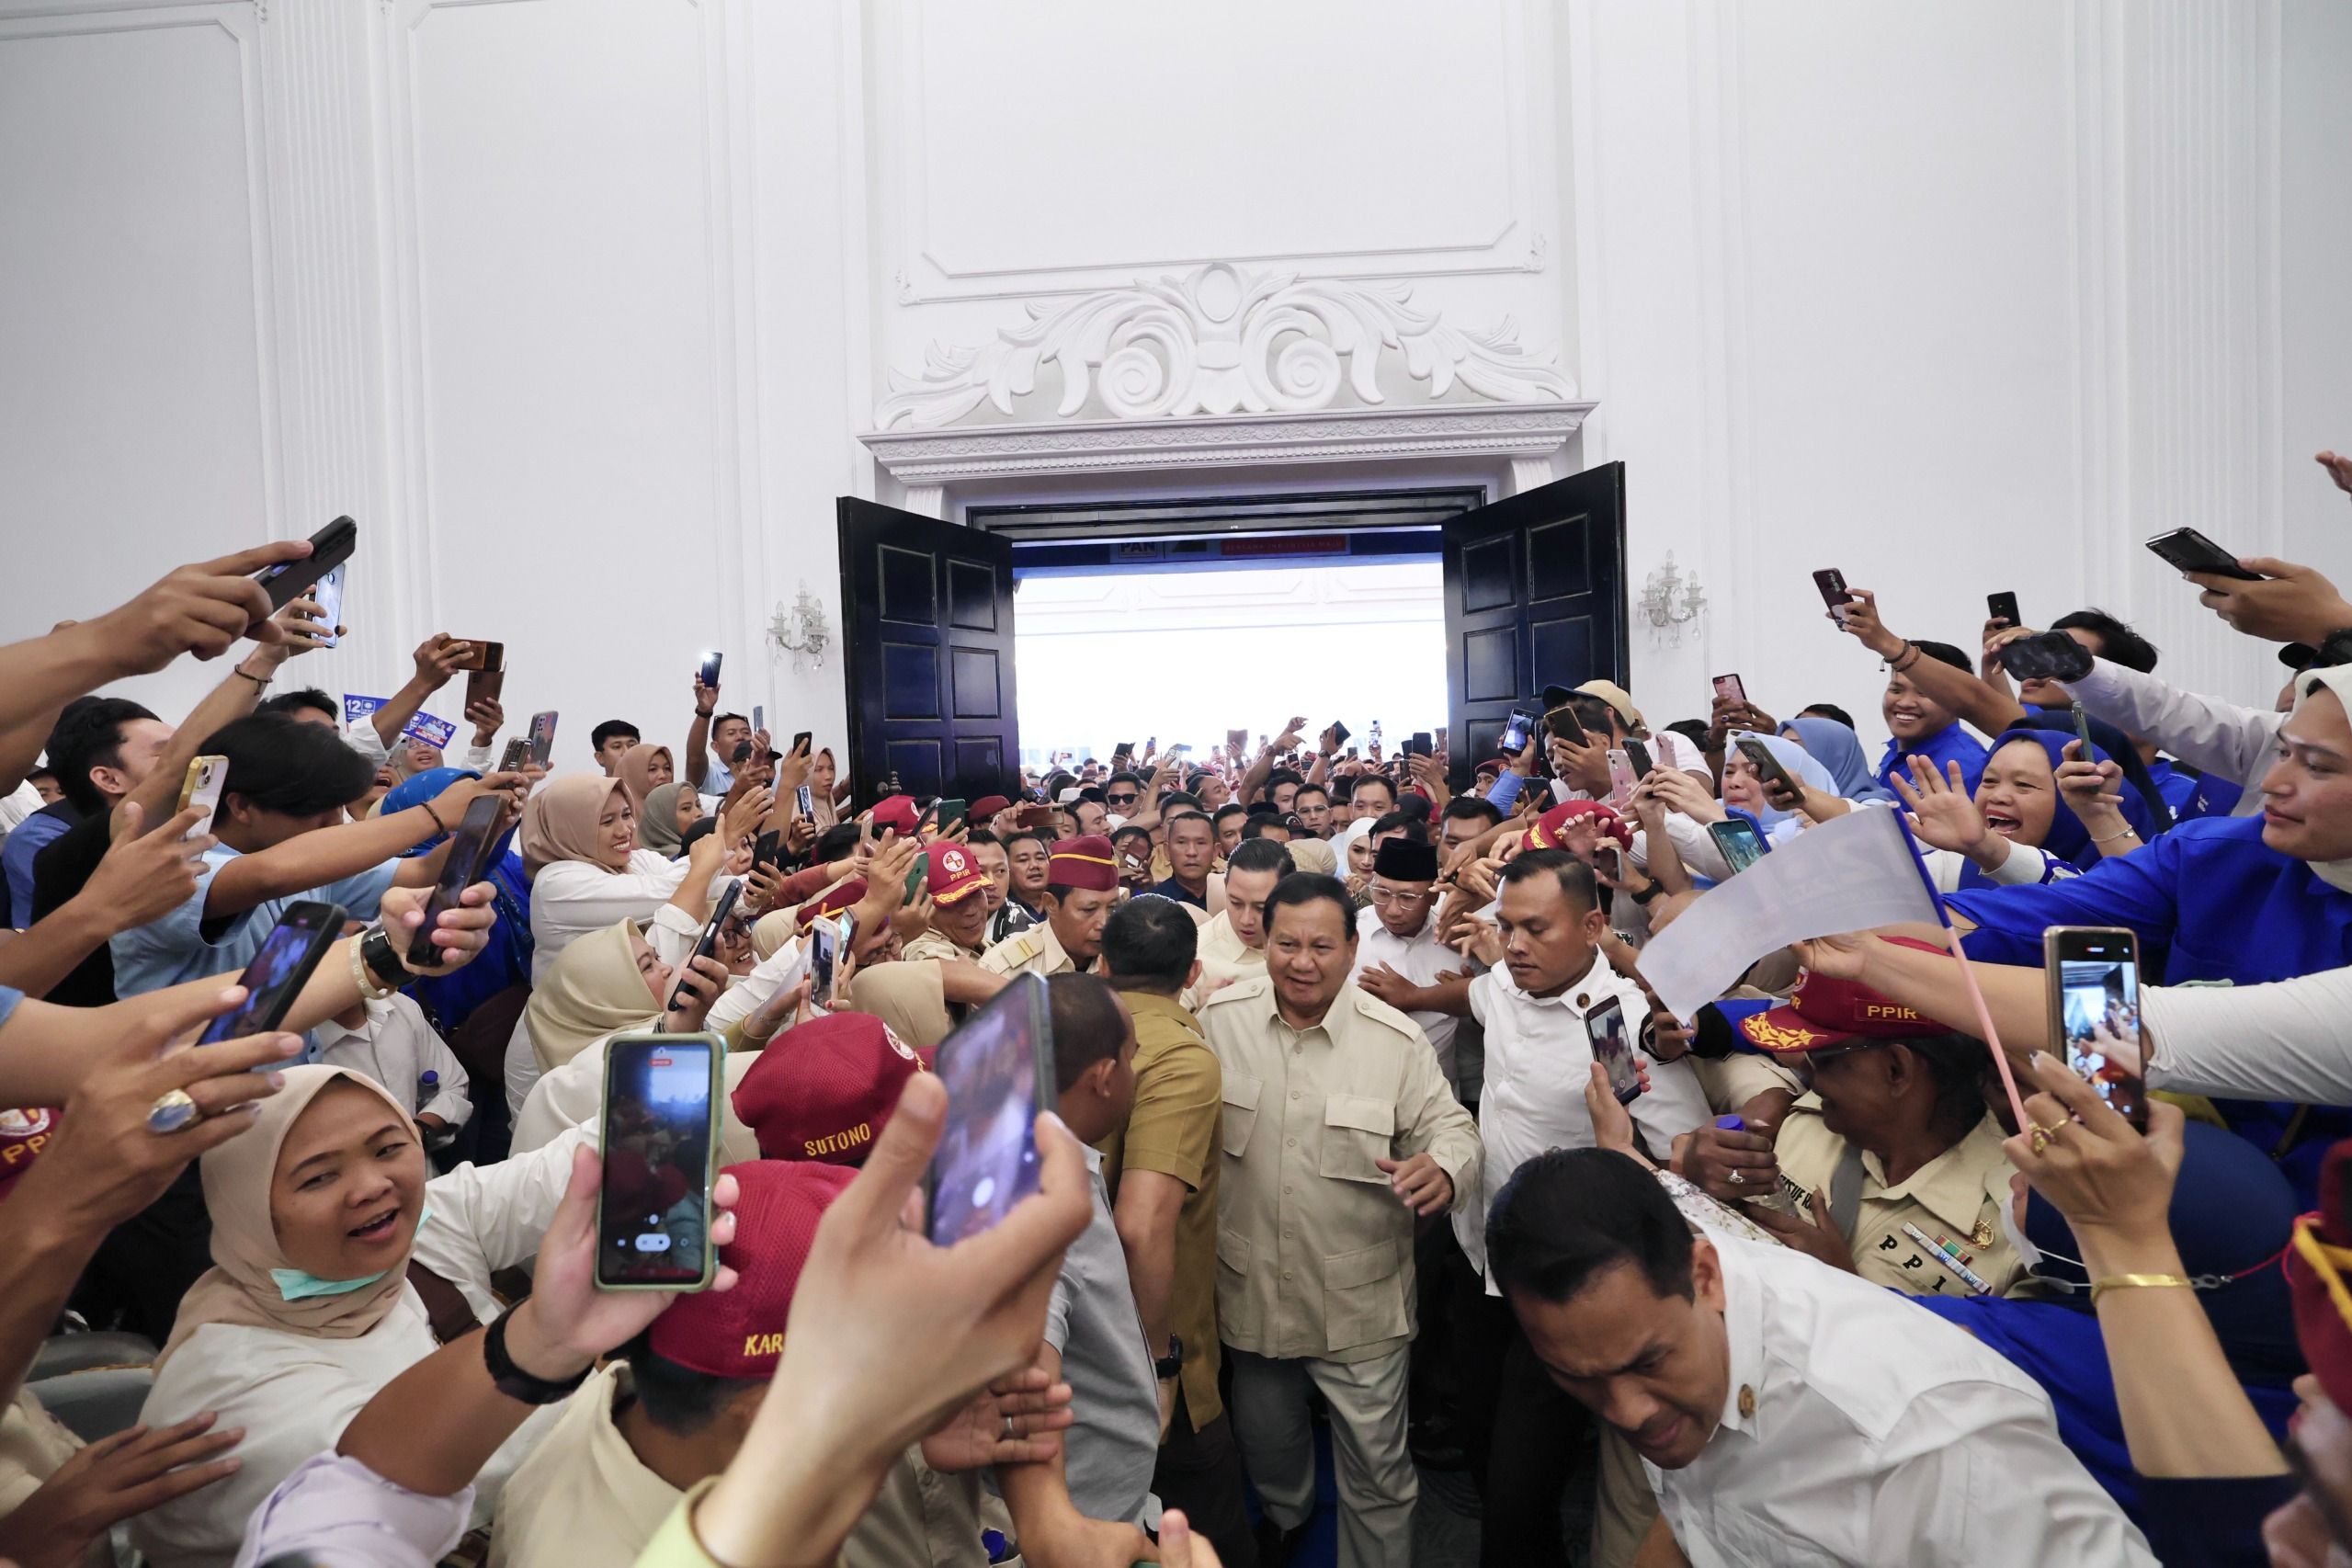 Disambut dan Ditunggu Masyarakat, Prabowo: Saya Rasakan Dukungan yang Besar